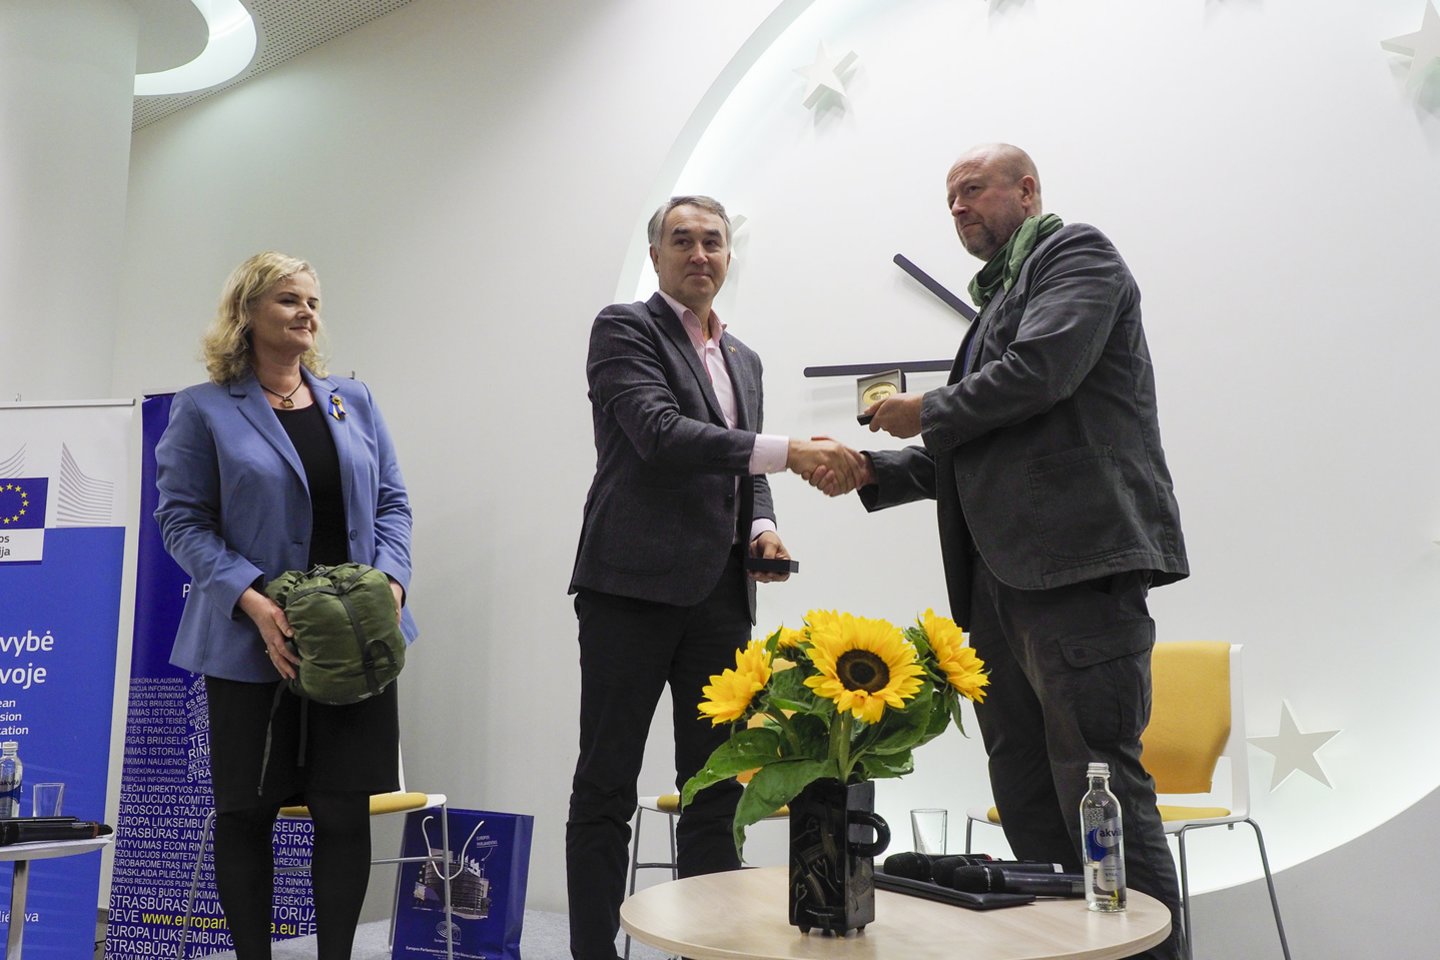 Europos namuose Vilniuje organizacijai „Blue/Yellow“ įteiktas Europos piliečio apdovanojimas.<br>V.Ščiavinsko nuotr.